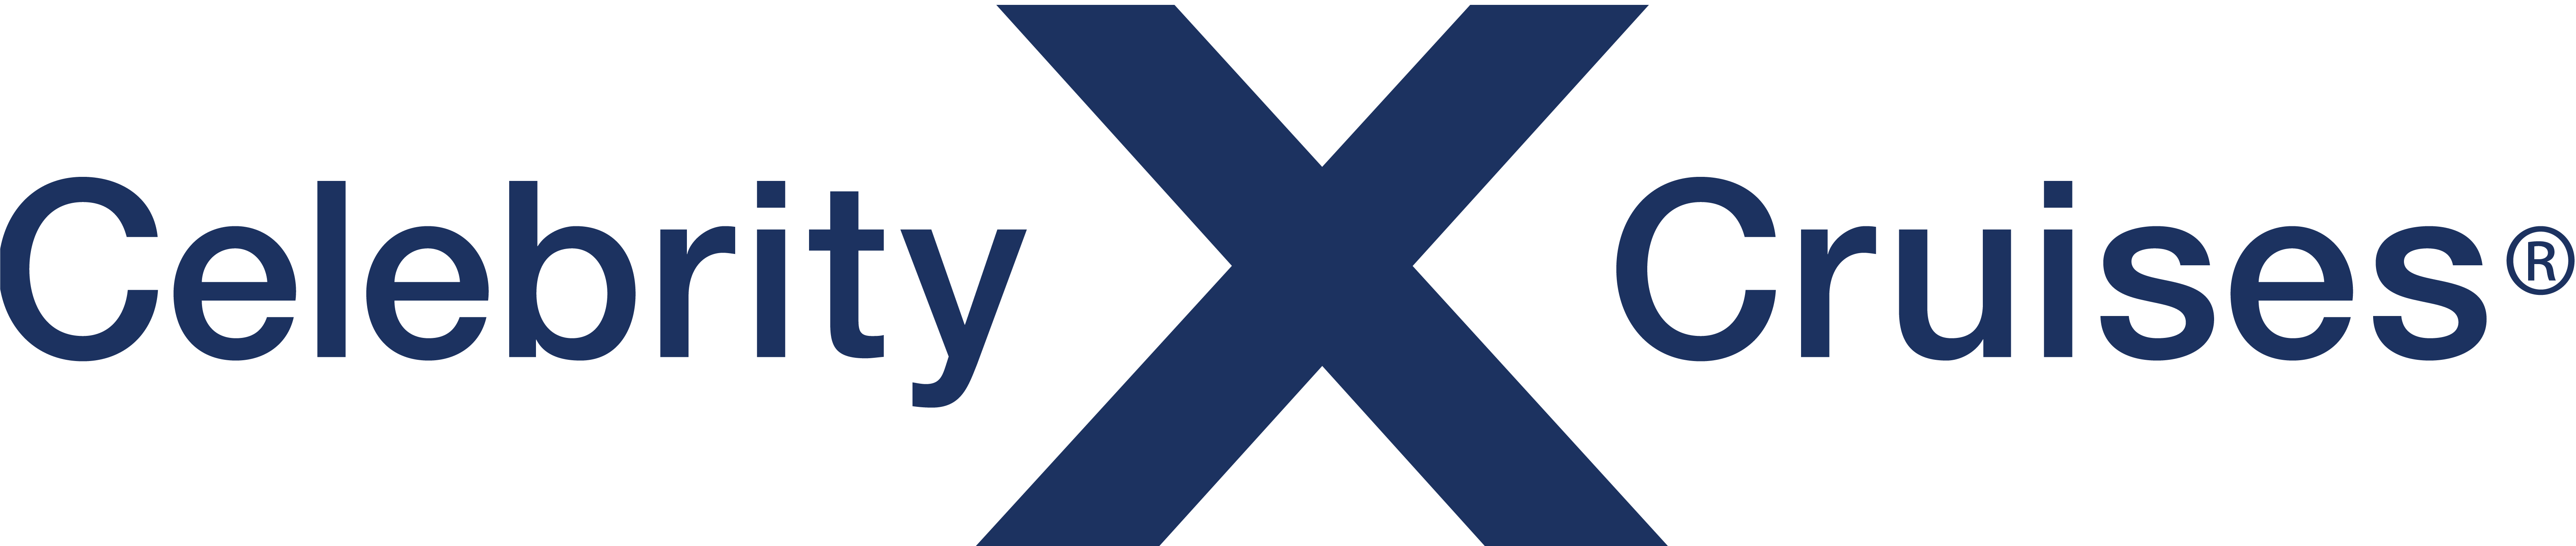 Celebrity Equinox Reederei Logo